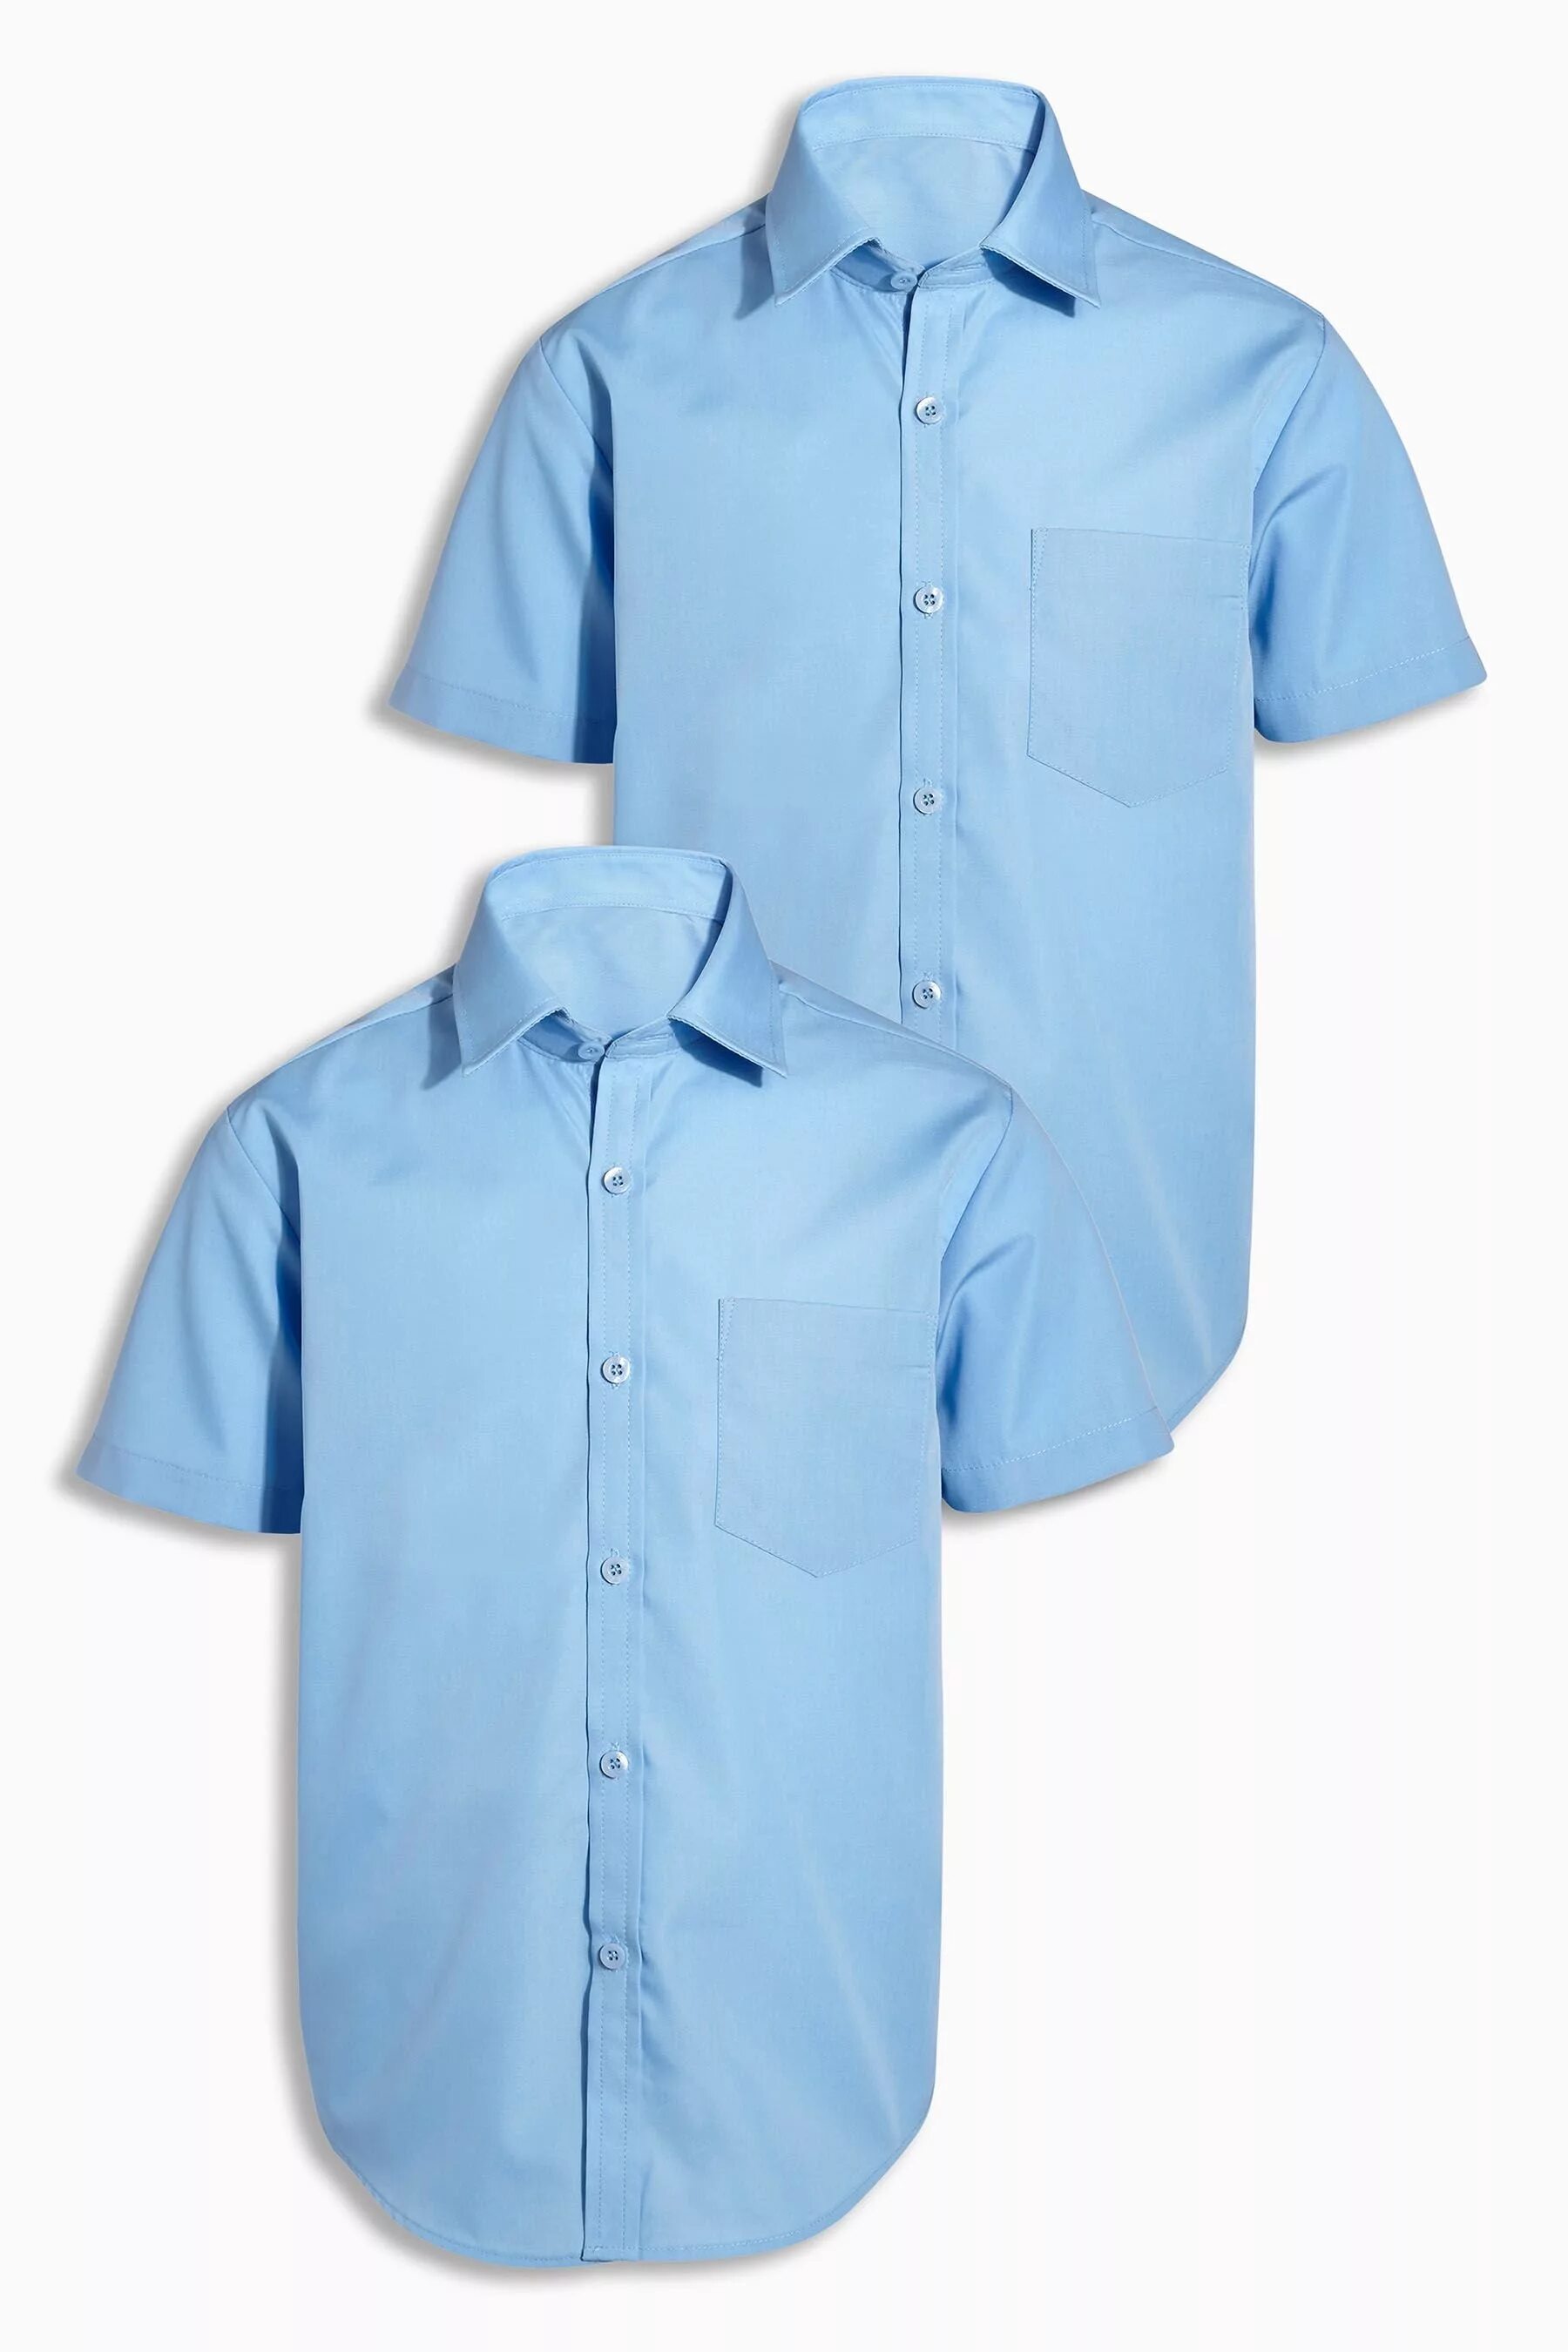 Голубые рубашки 2 рубашки. Рубашка next для мальчика. Рубашка Некст для мальчика. Комплект из 2 рубашек next.